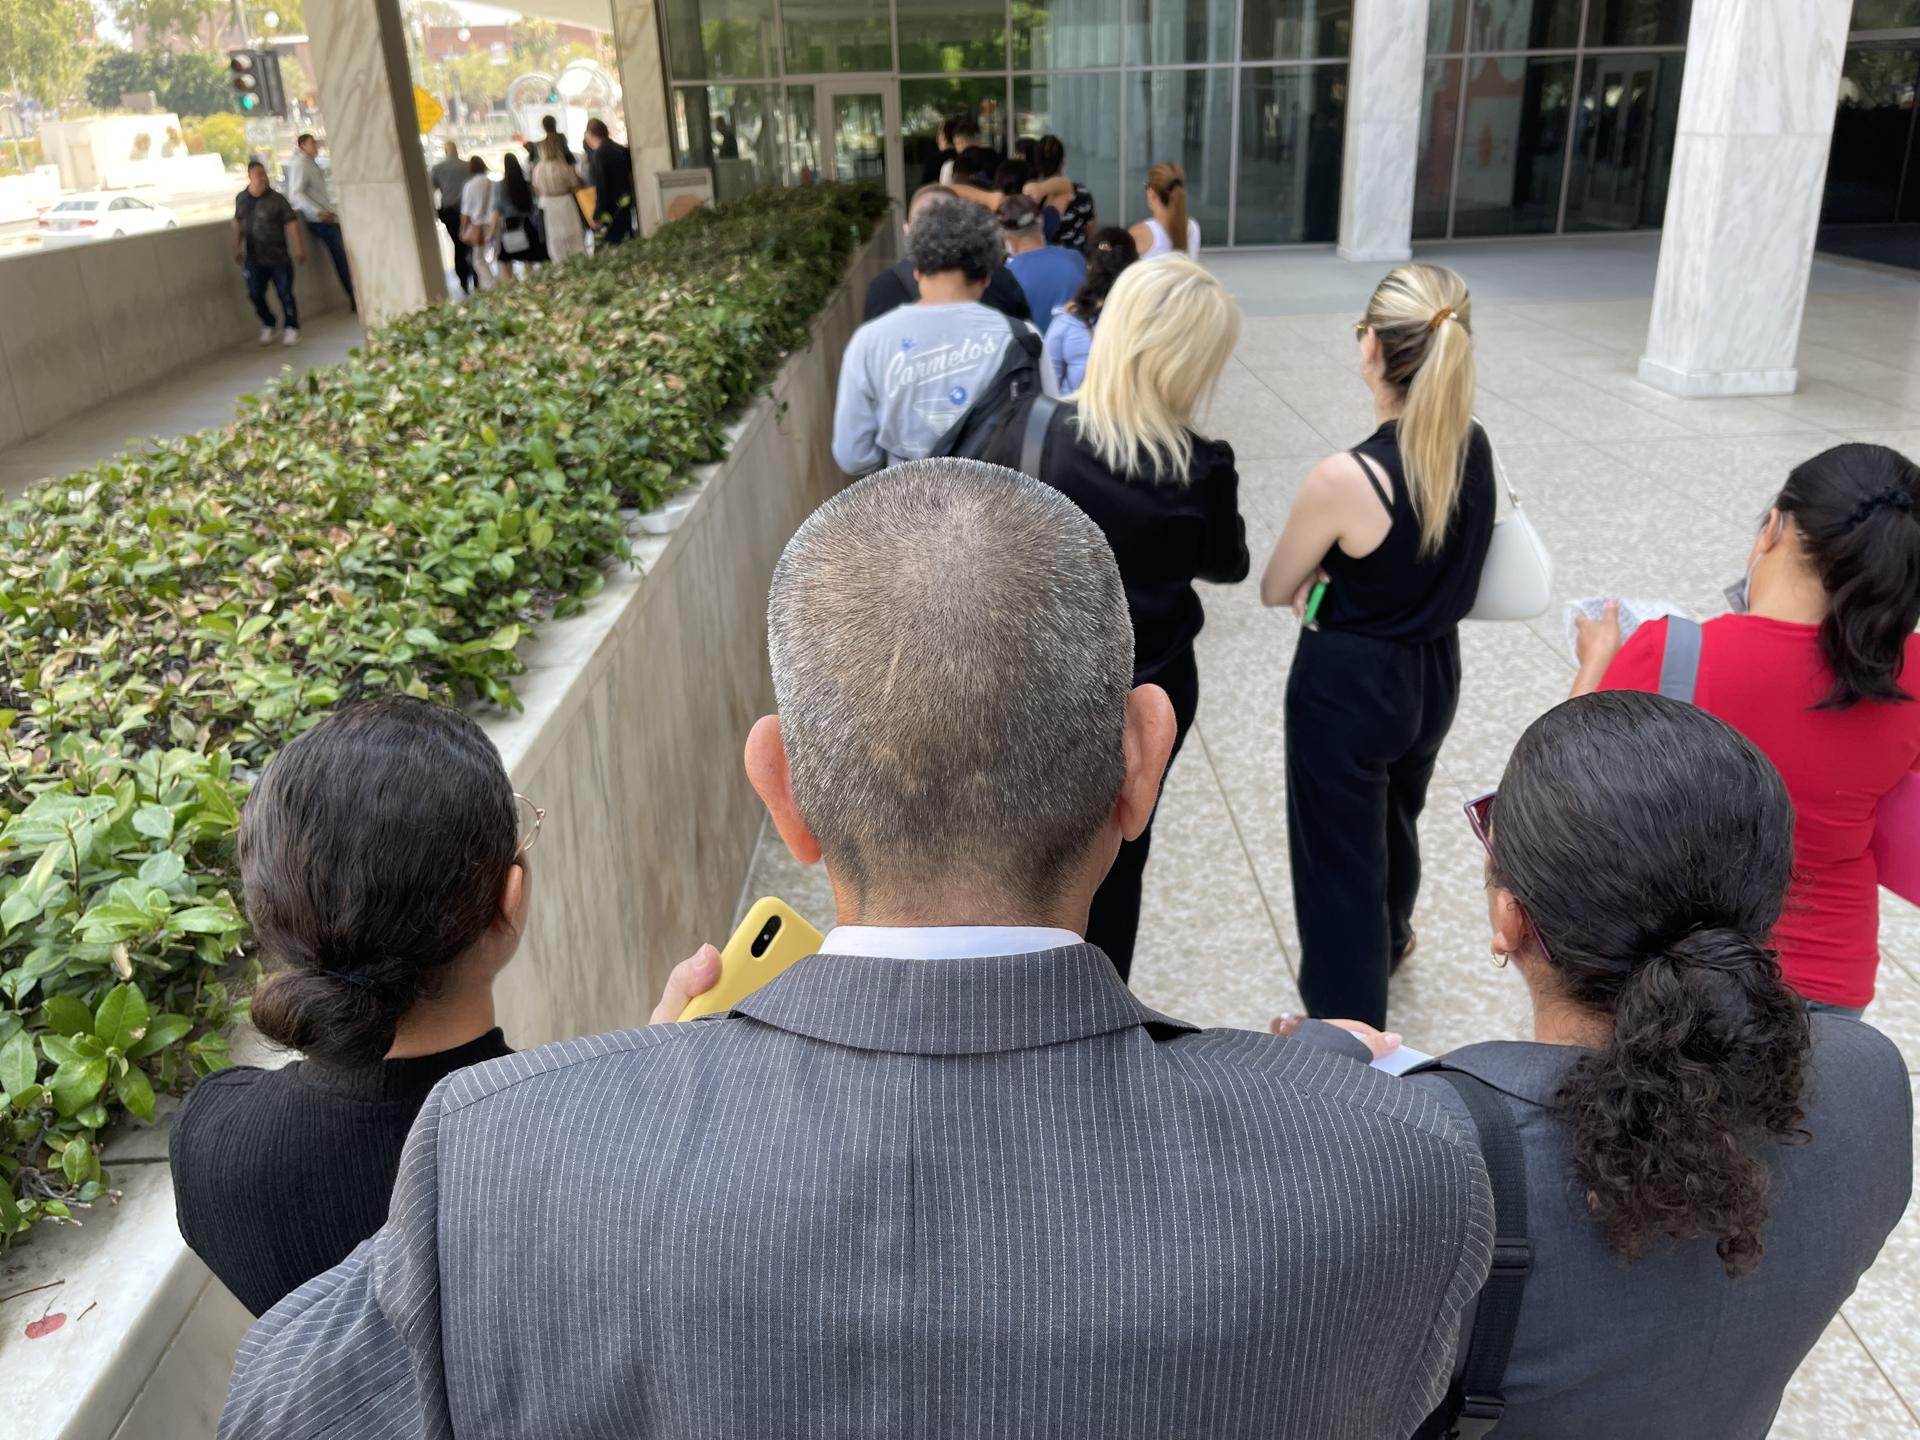 Imagen de archivo que muestra a varias personas esperando en fila para ingresar a la corte de inmigración el 12 de julio en Los Ángeles, California (EE.UU.). EFE/ Ana Milena Varón
